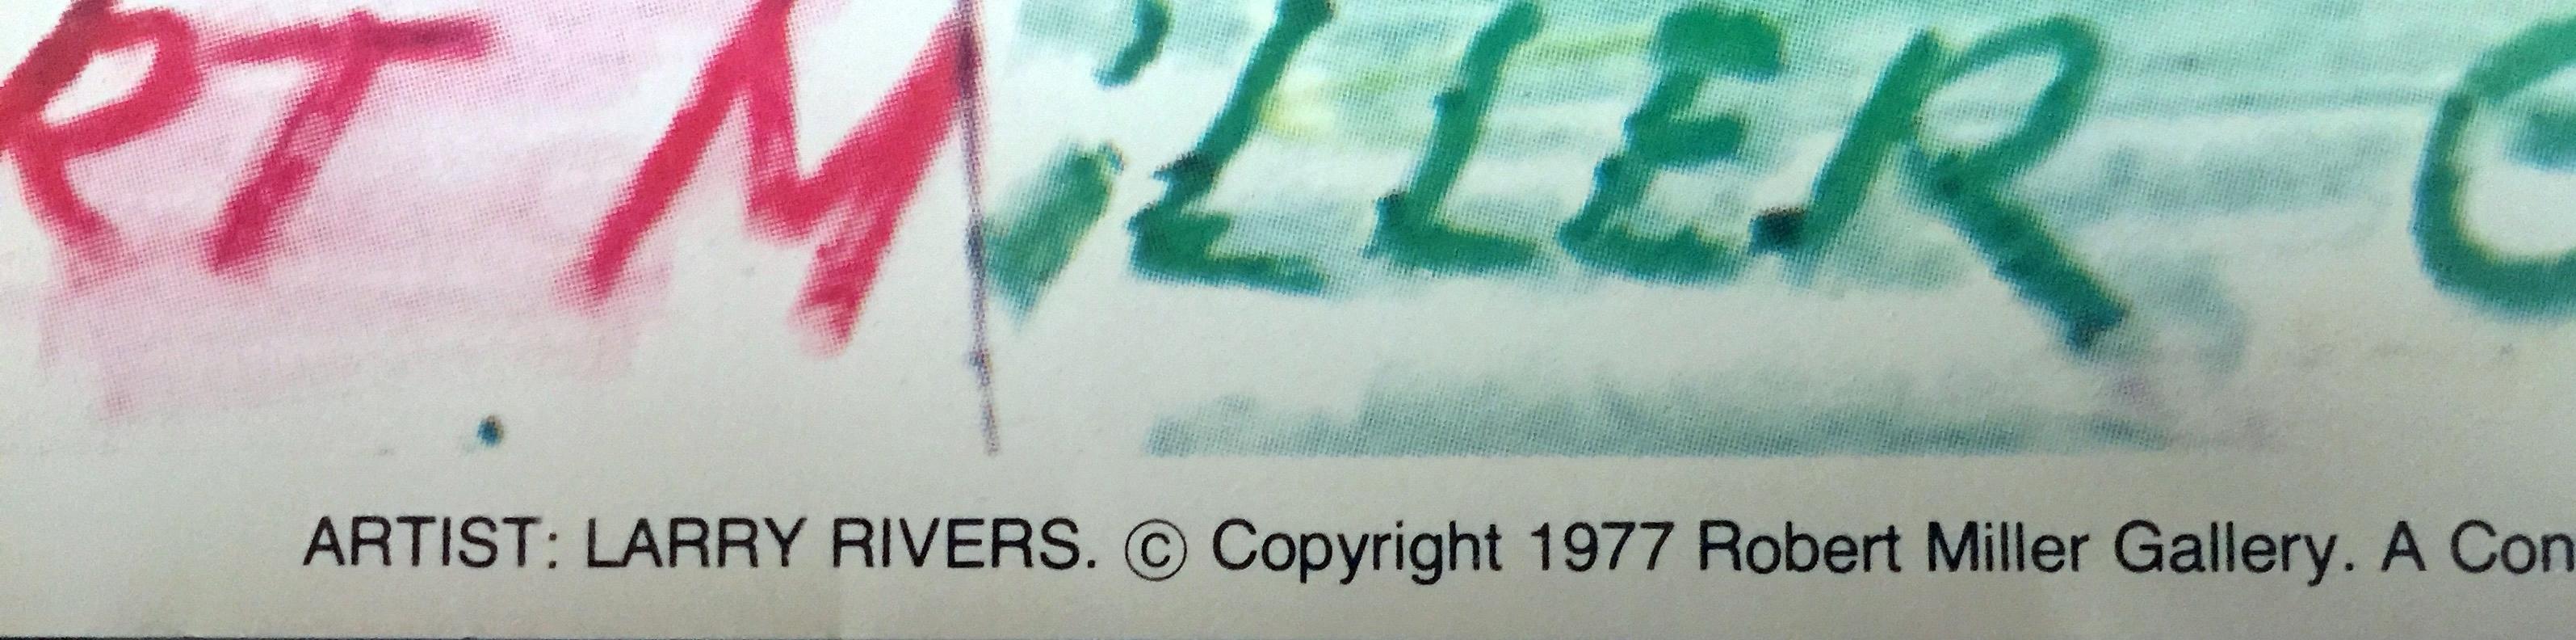 Larry Rivers
Affiche de lithographie offset 
Affiche lithographiée en offset sur papier vélin 
Plaque signée (Signature en caractères d'imprimerie)
32 × 30 pouces
Non encadré
Rare affiche vintage des années 1970 de Larry Rivers, lithographie offset